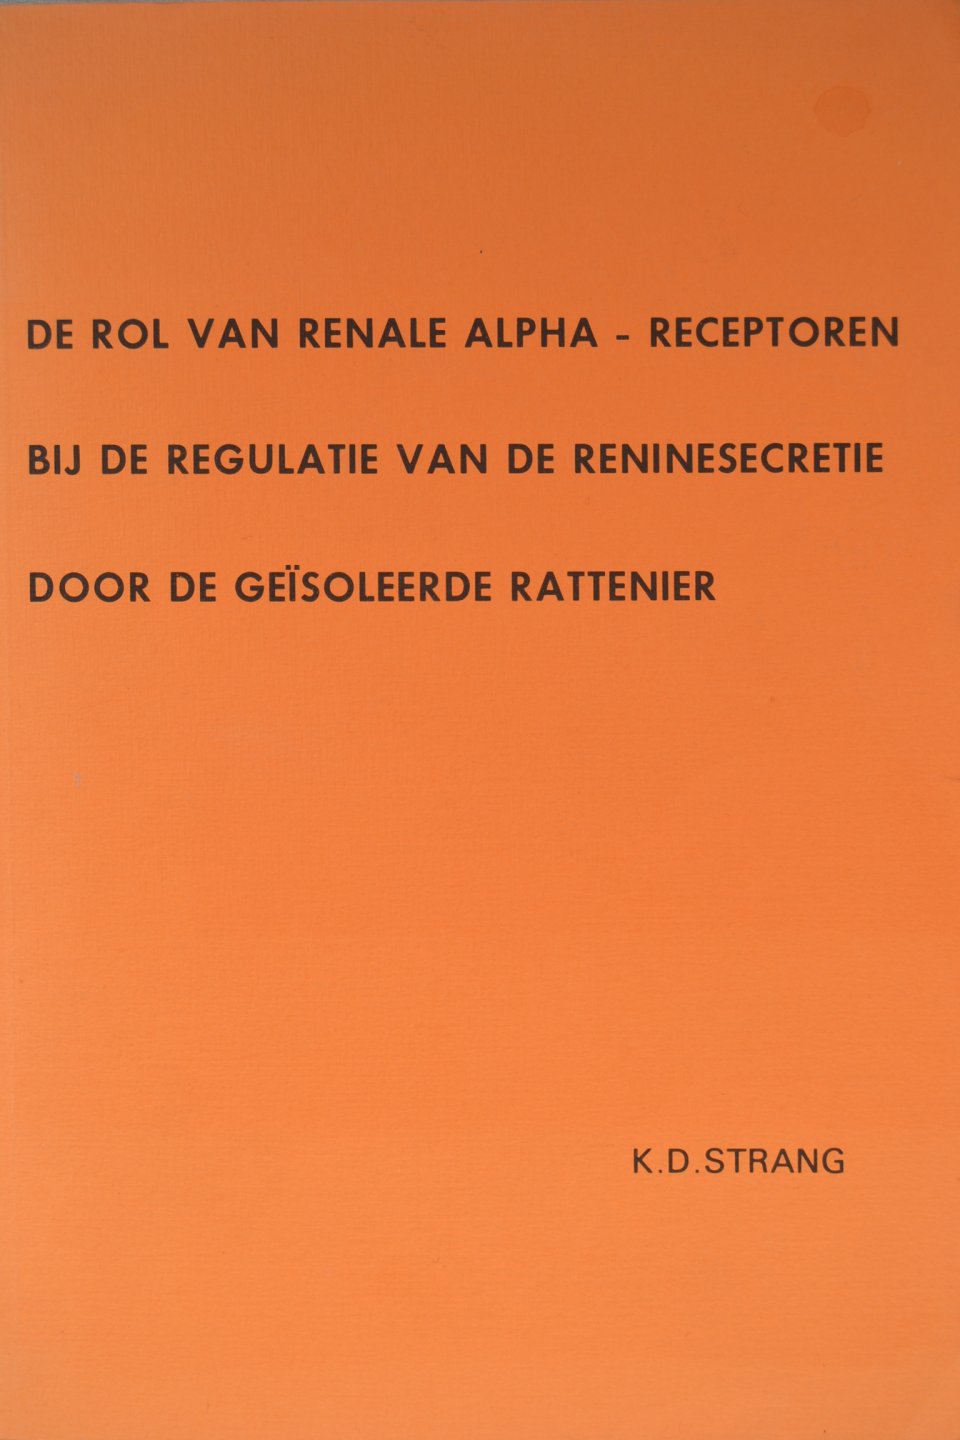 K.D. Strang - De rol van renale alpha-receptoren bij de regulatie van de reninesecretie door de geïsoleerde rattenier